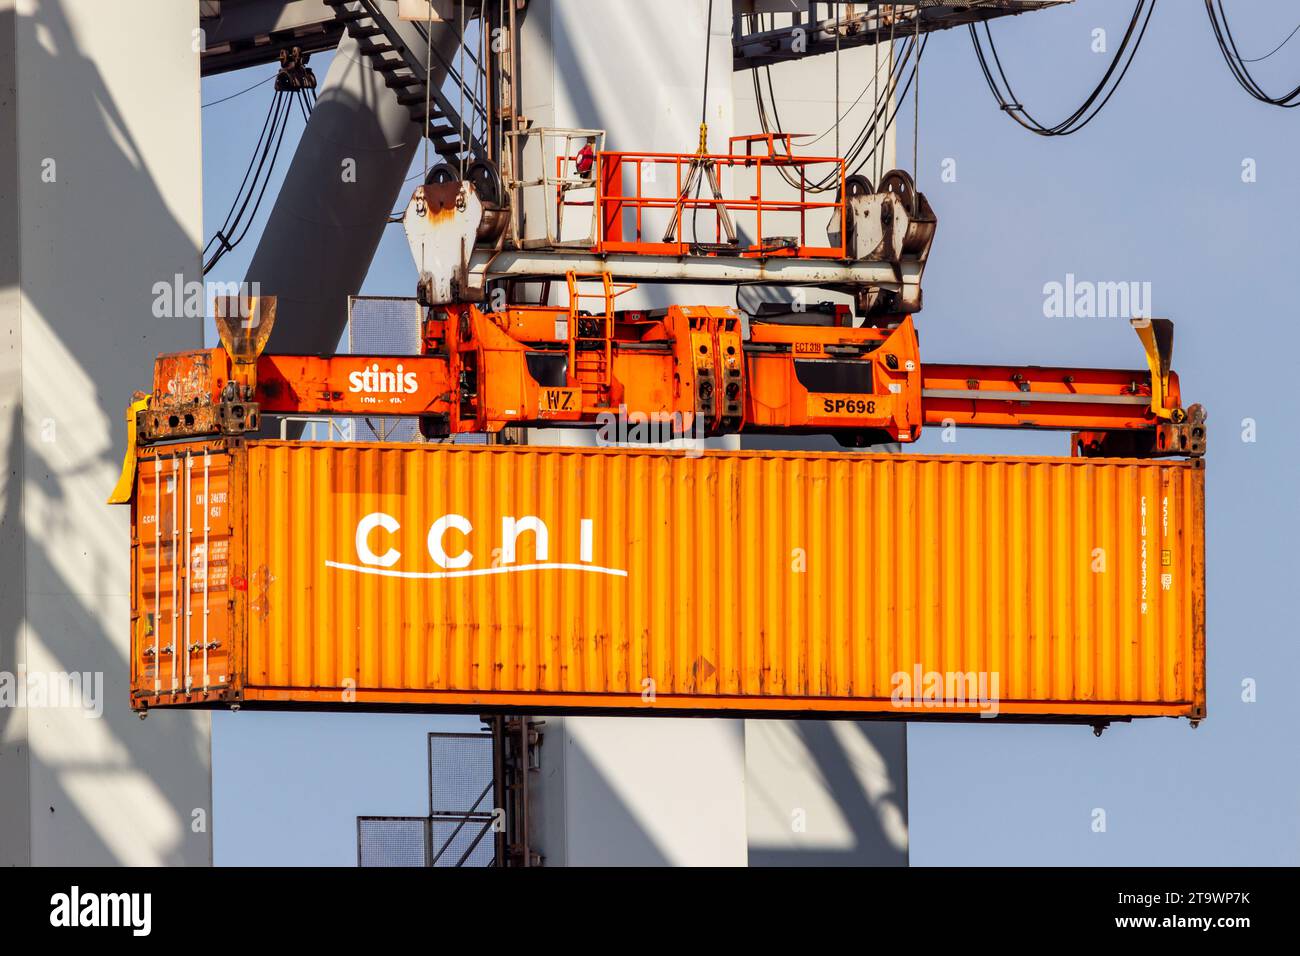 Kranbetreiber, der einen Schiffscontainer von einem Frachtschiff im Hafen von Rotterdam entlädt. Niederlande - 16. März 2016 Stockfoto